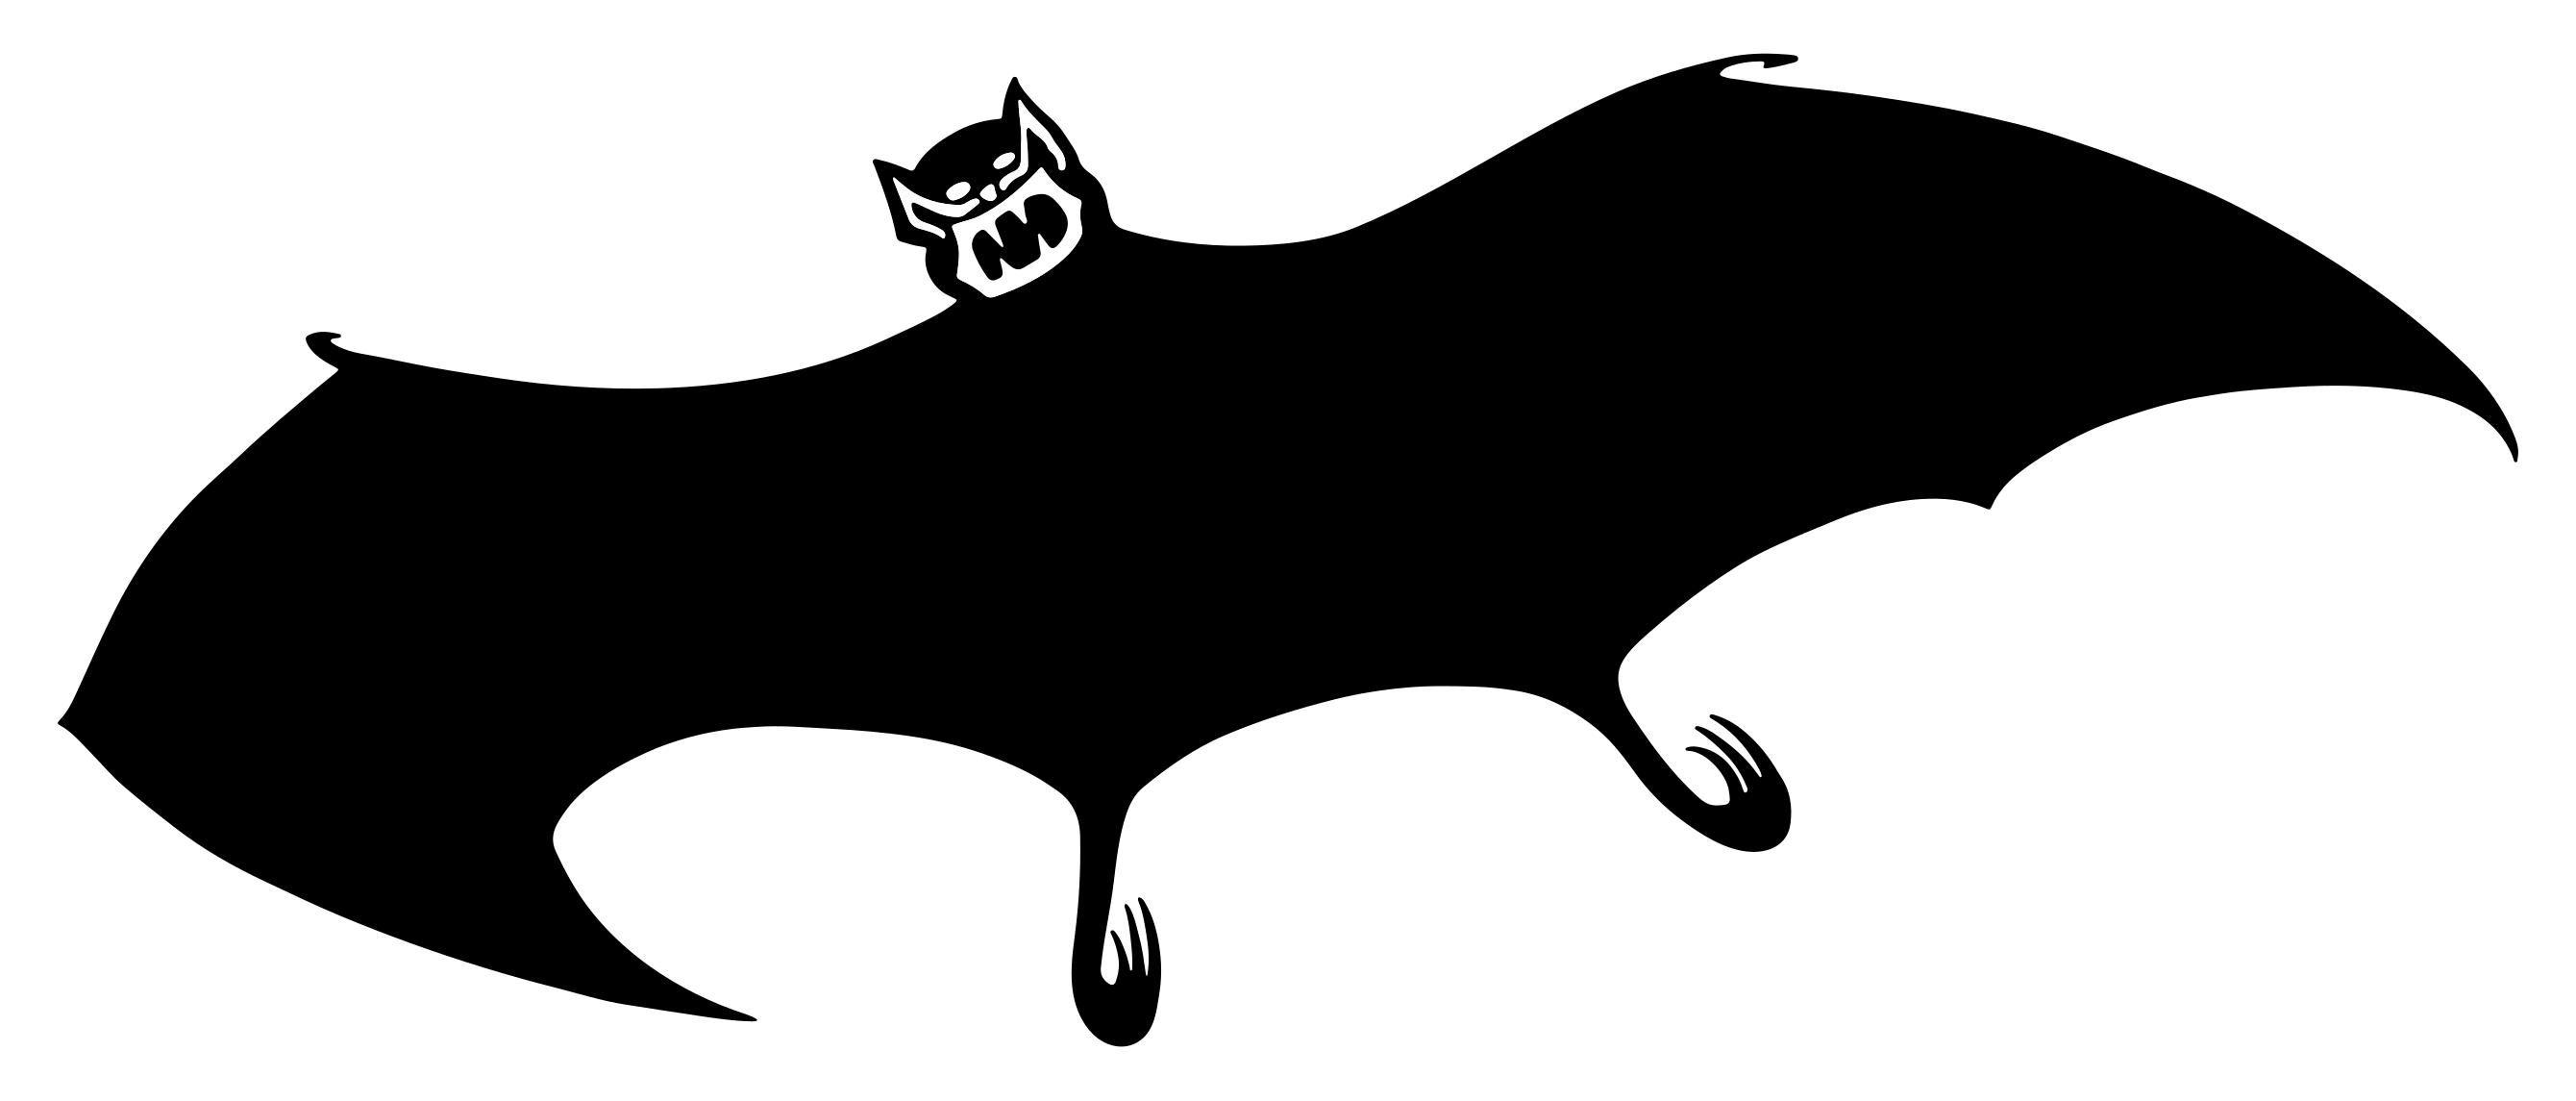 Dracula Bat Logo - Dracula Bat Clipart